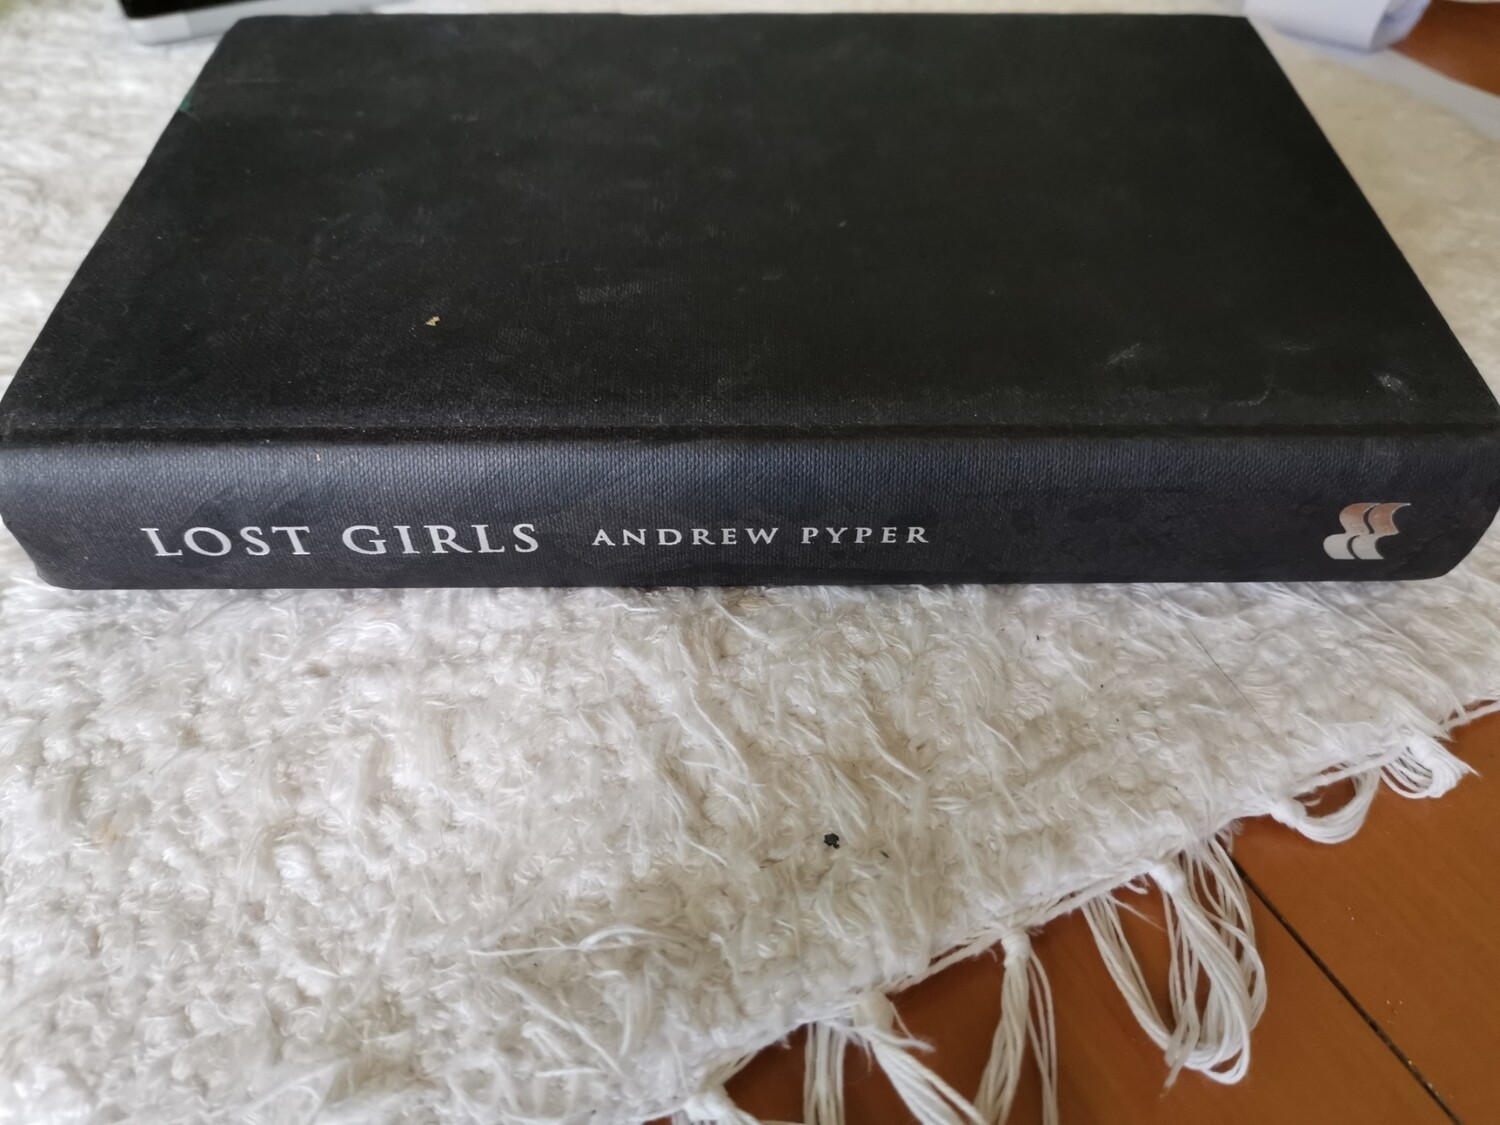 Lost Girls, Andrew Pyper